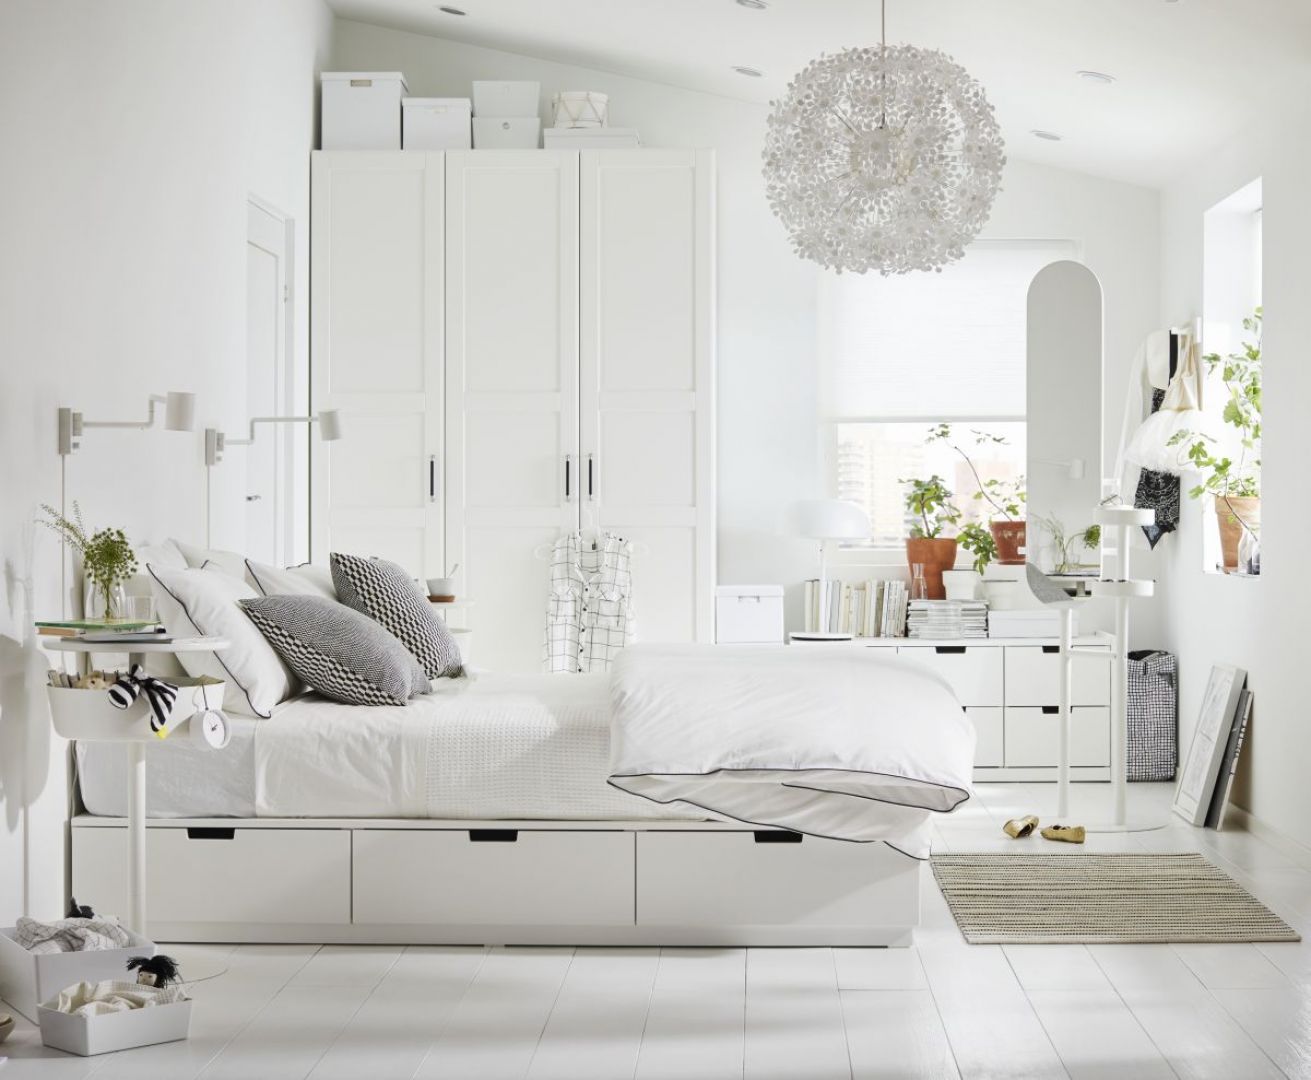 Wakacyjna sypialnia według marki IKEA. Fot, IKEA